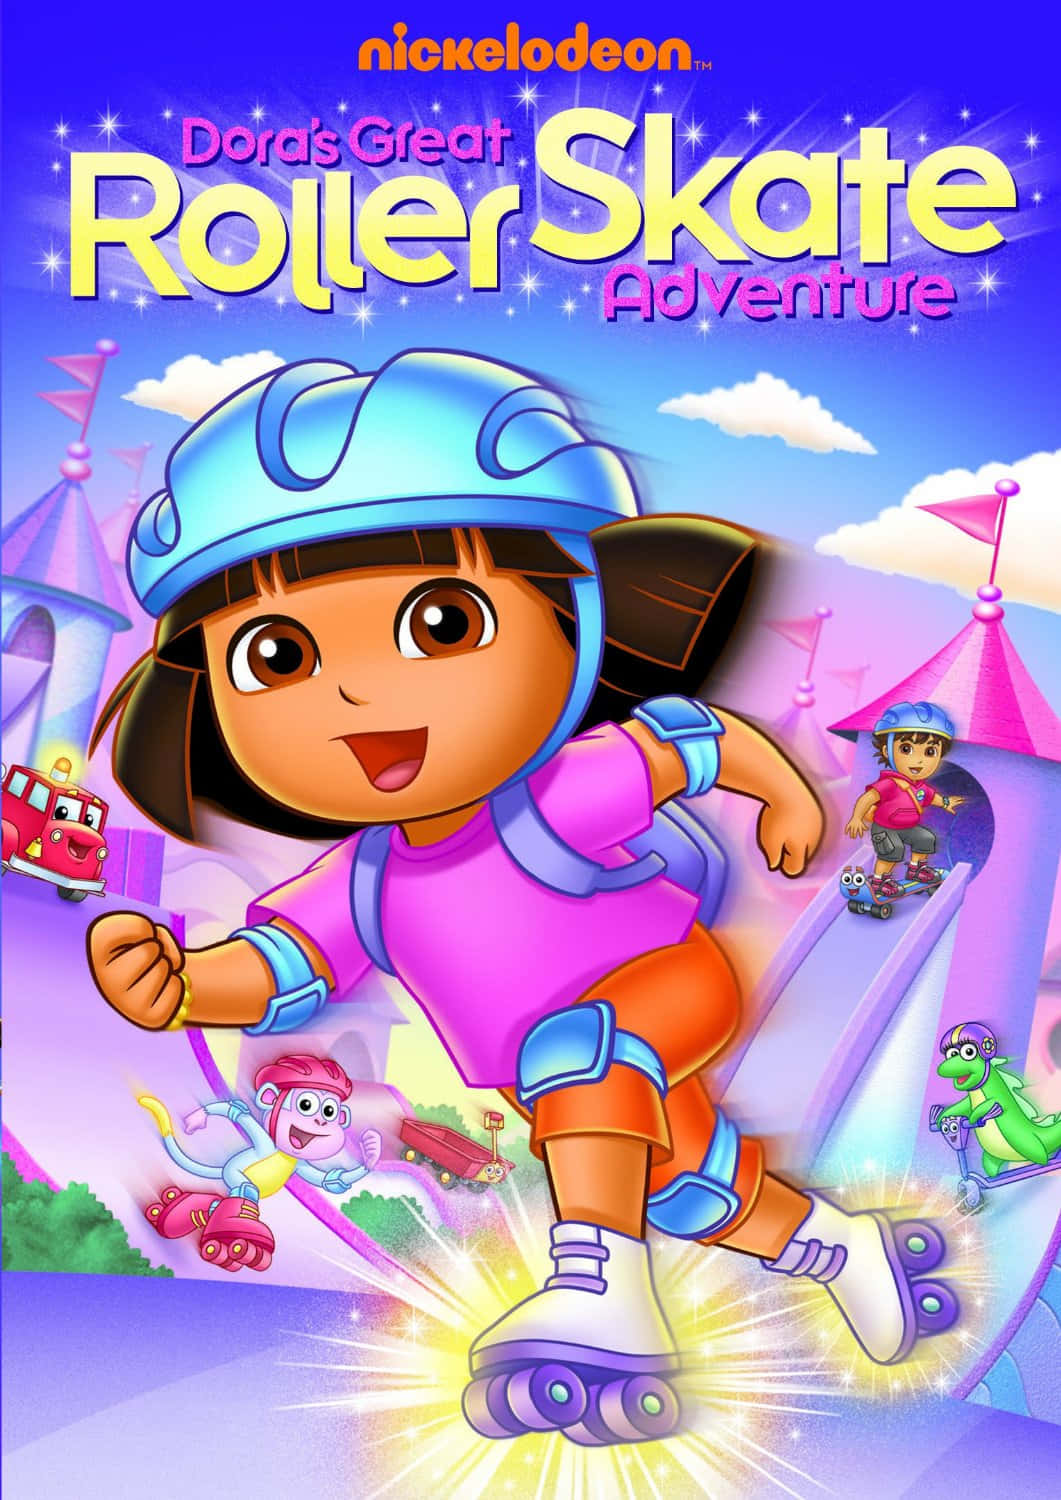 Come explore with Dora!